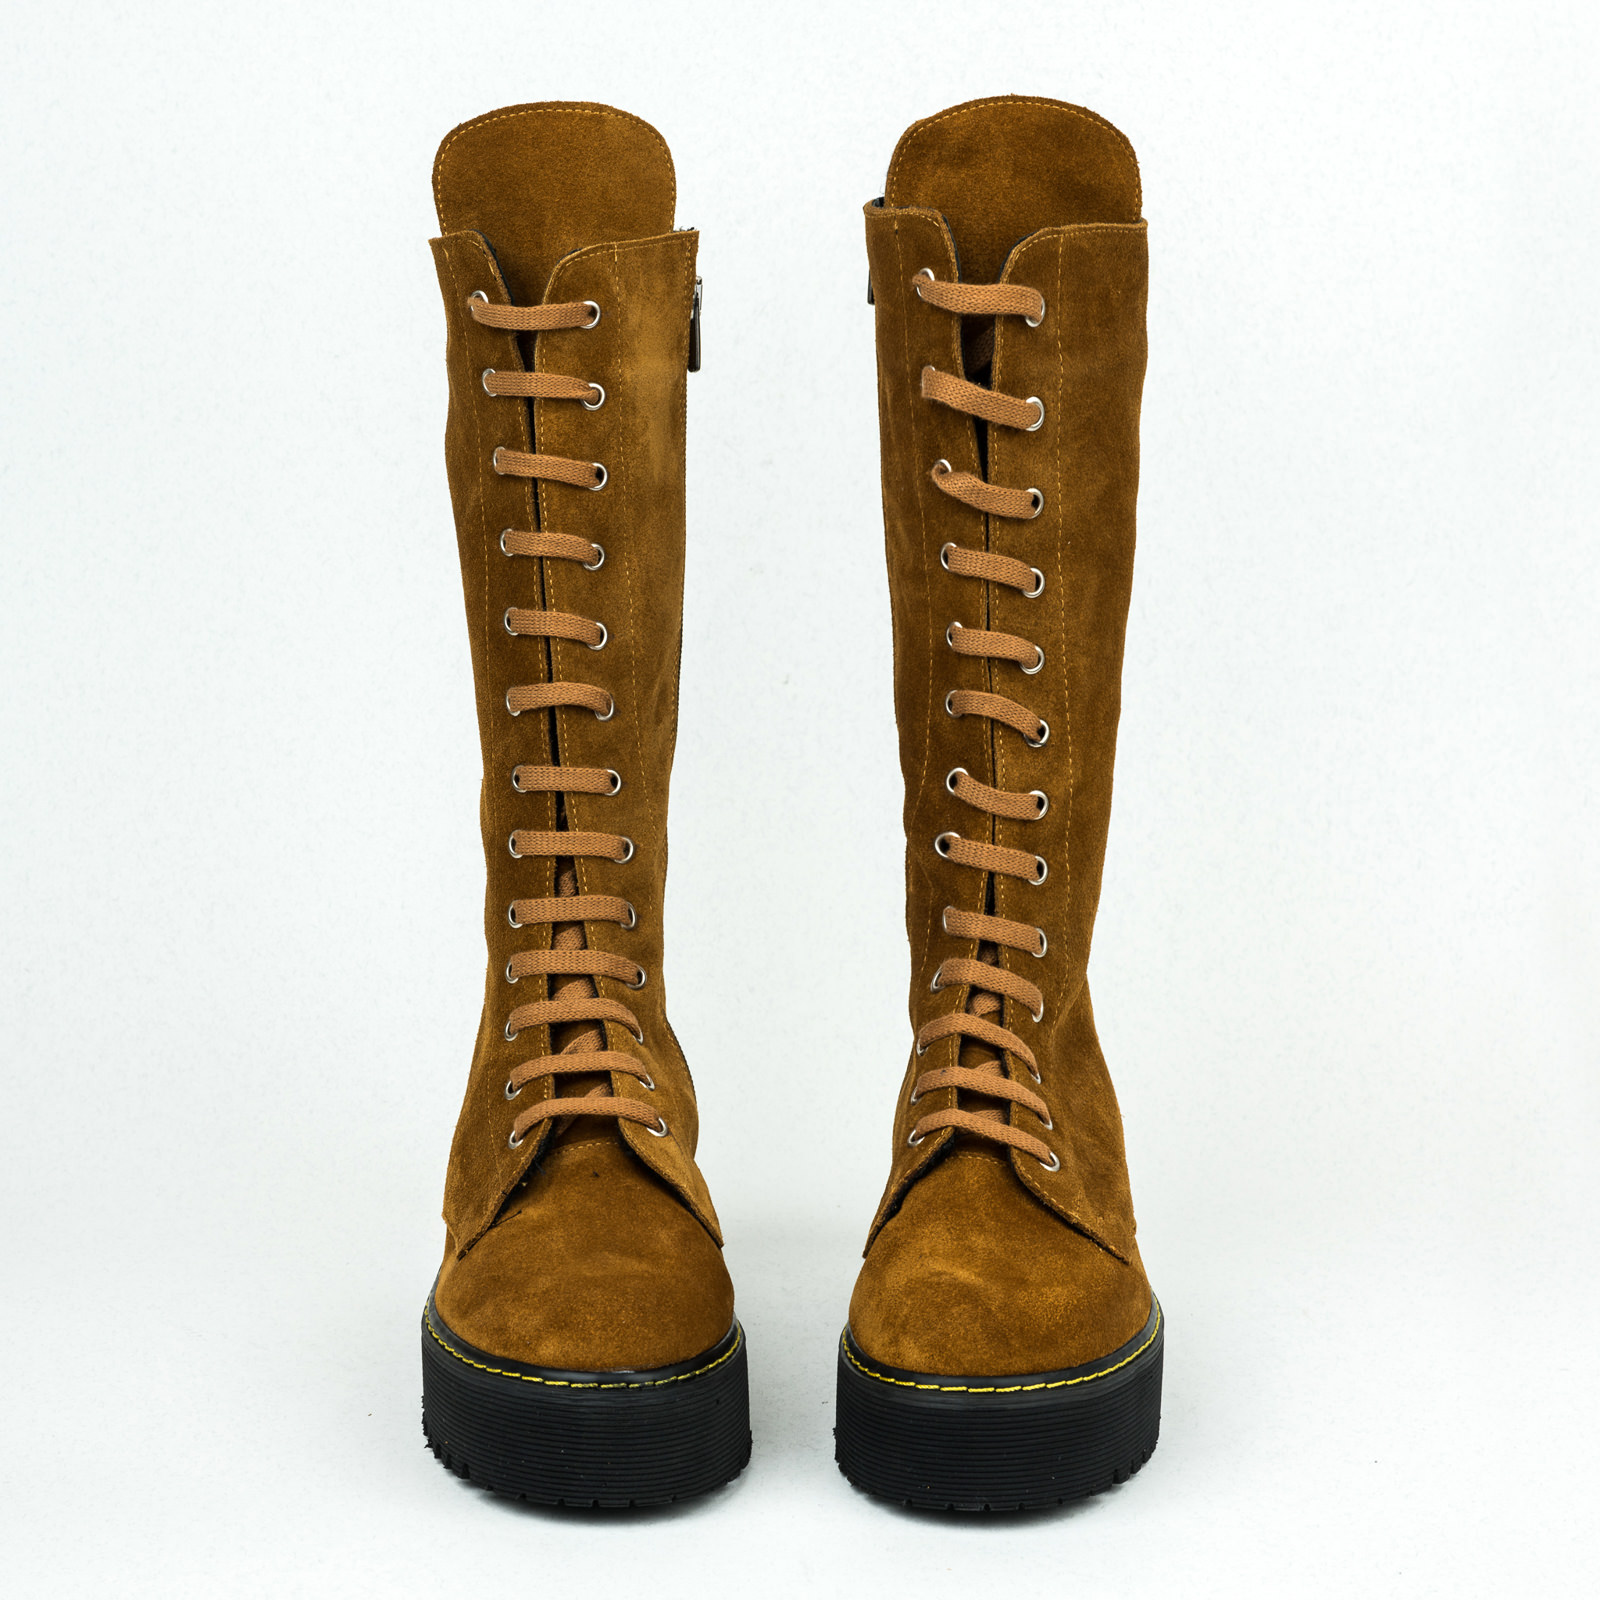 Leather WATERPROOF boots B204 - OCHRE